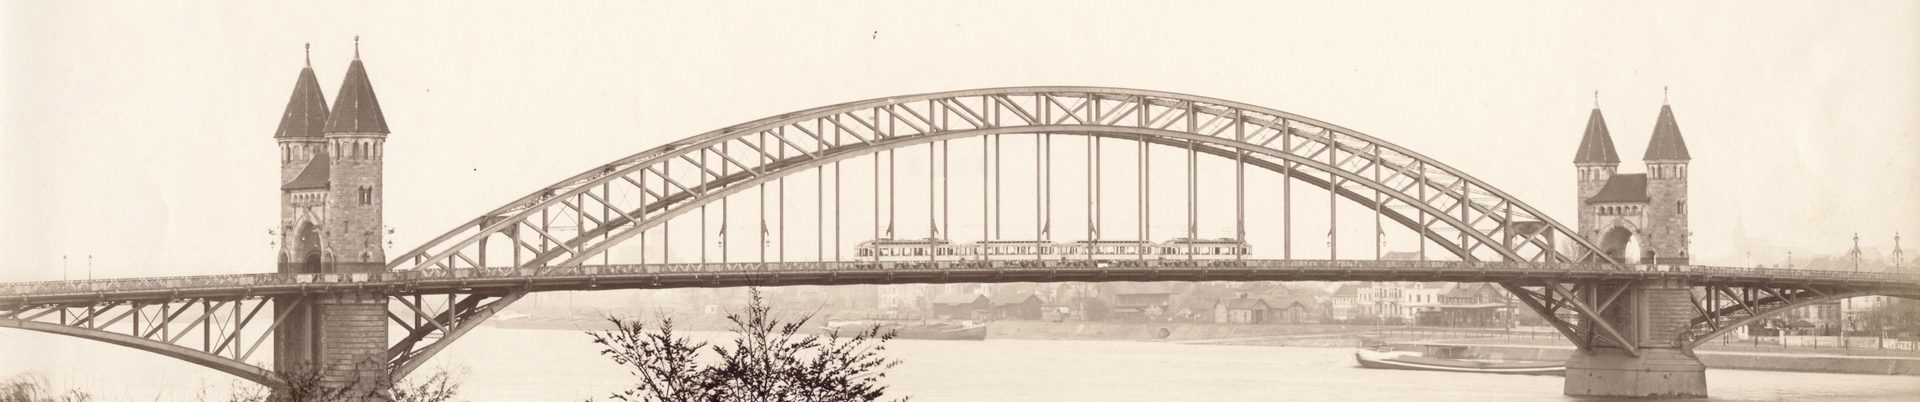 Bild der alten Rheinbrücke